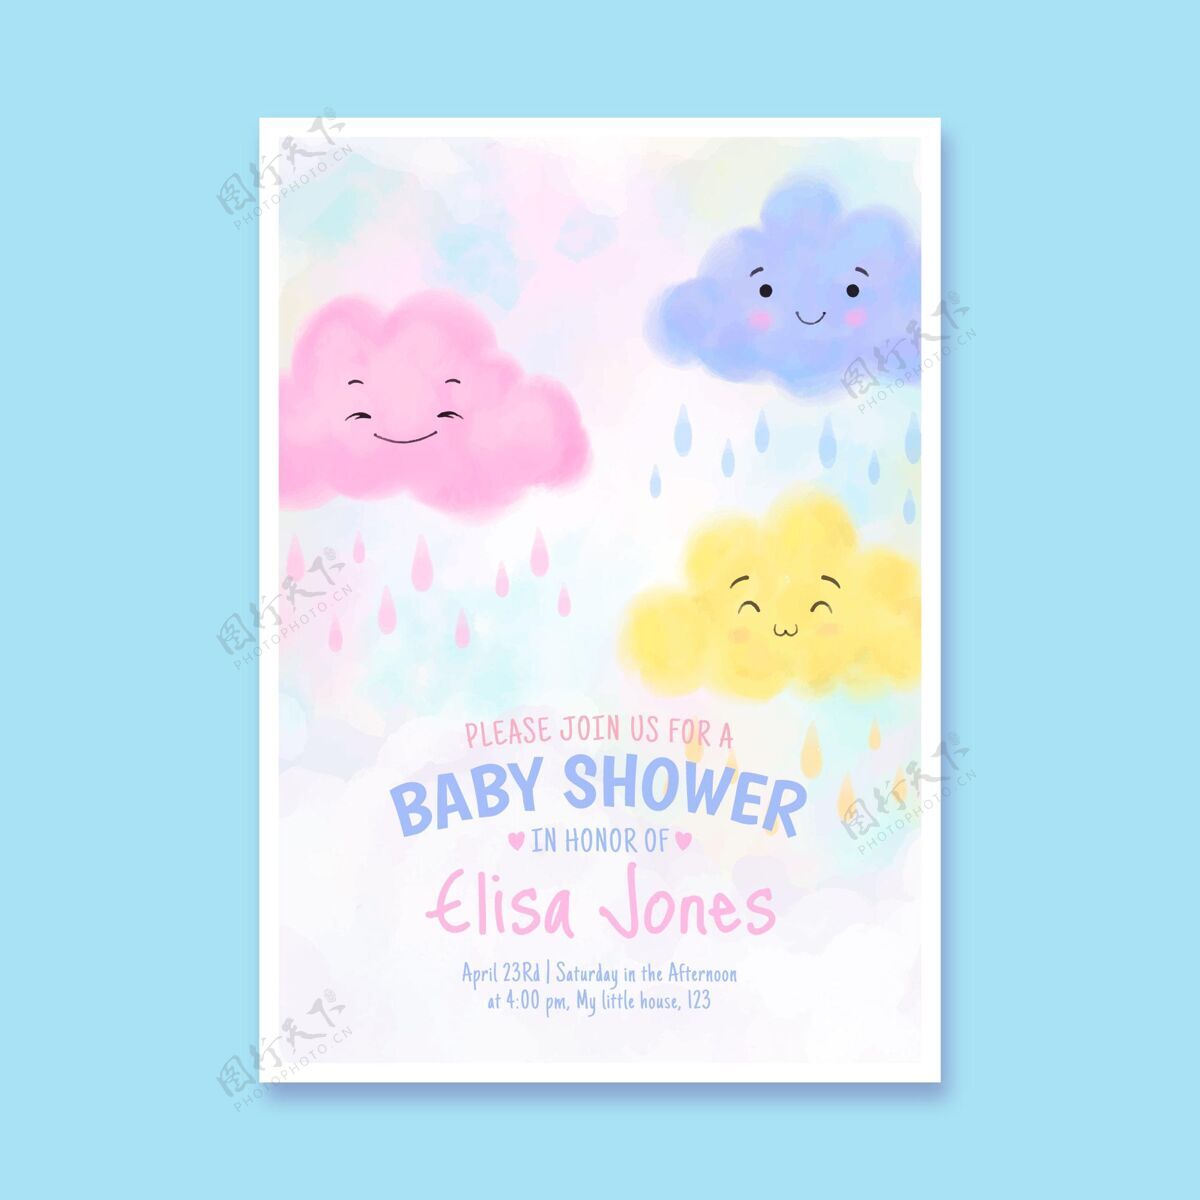 可爱可爱的丘瓦德阿莫婴儿淋浴邀请手绘雨可爱